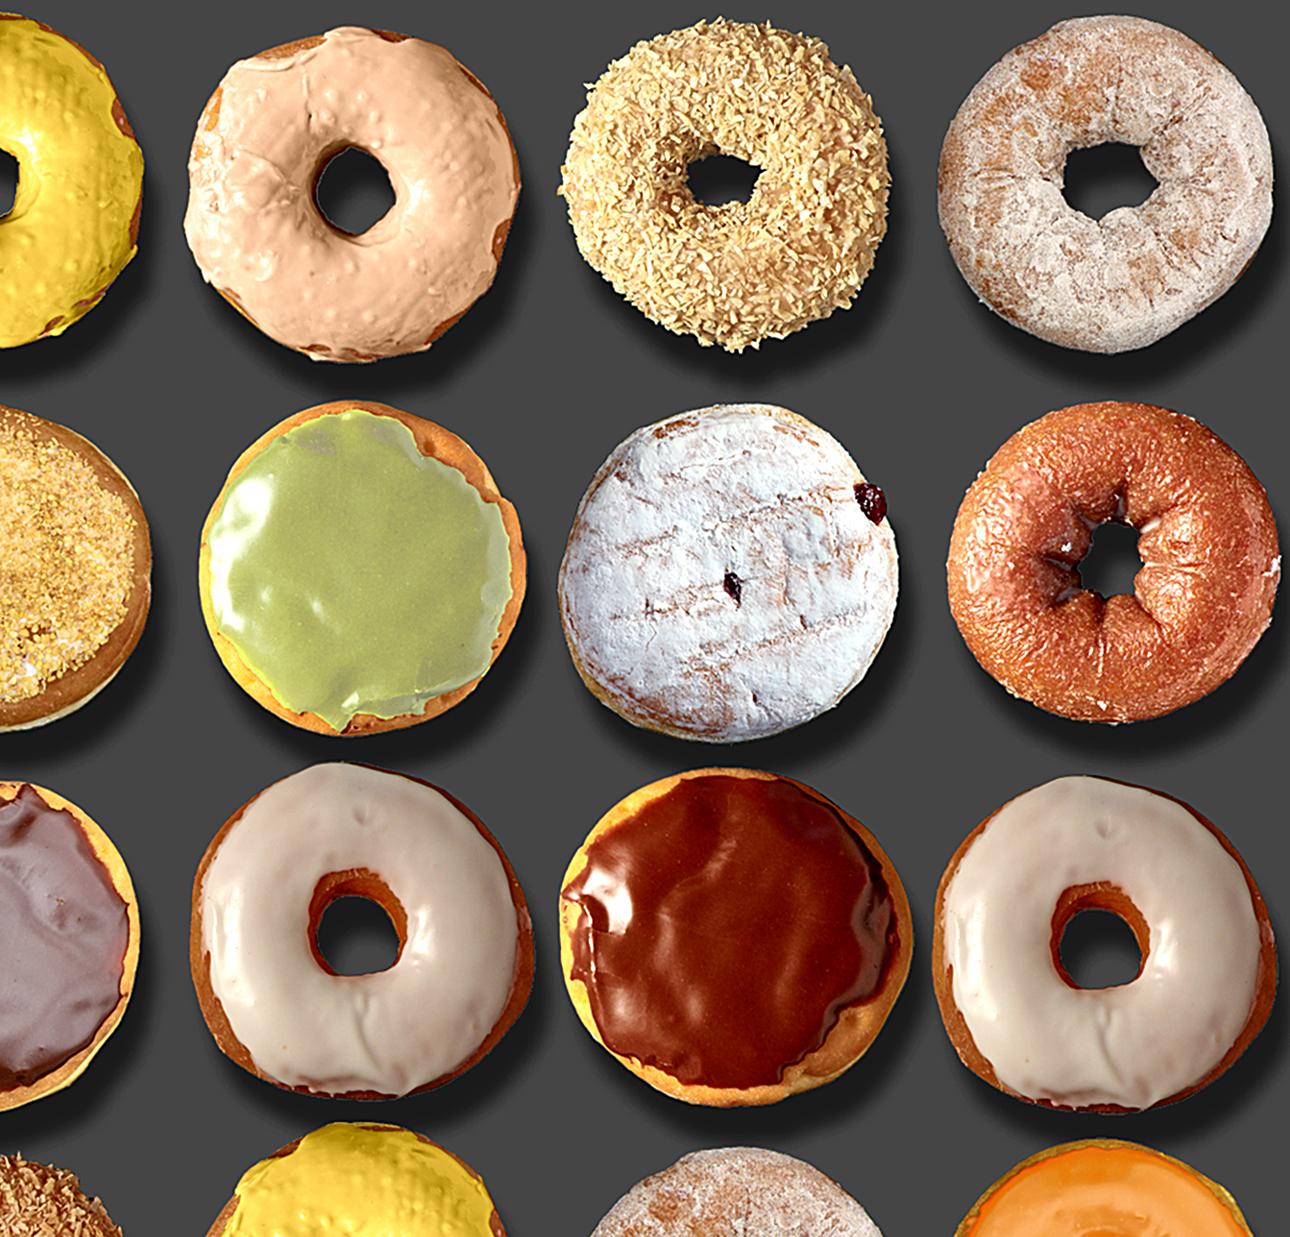 Sie haben in den sozialen Medien weltweit von den außergewöhnlichen Donut-Porträts von Candice CMC gelesen, und wir sind begeistert und stolz, ihre Arbeit zu vertreten.  
Ich habe in diese Auflistung ein Bild aus dem weltweiten Social Media Buzz